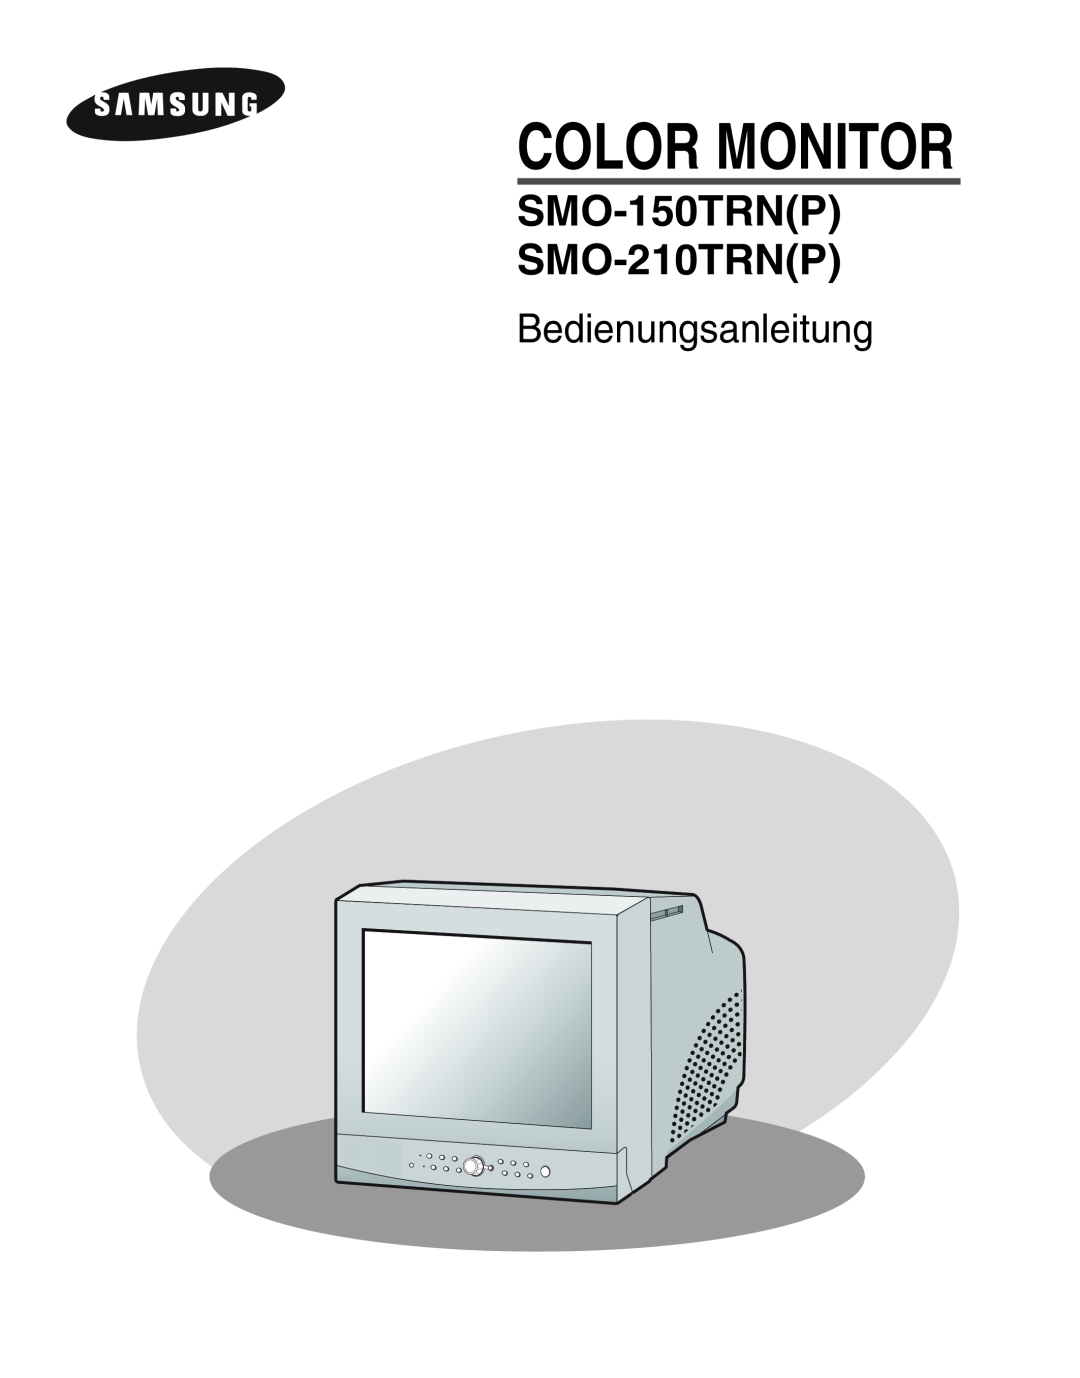 Samsung SMO-210MP/UMG, SMO-210TRP manual Bedienungsanleitung, Color Monitor, SMO-150TRNP SMO-210TRNP 